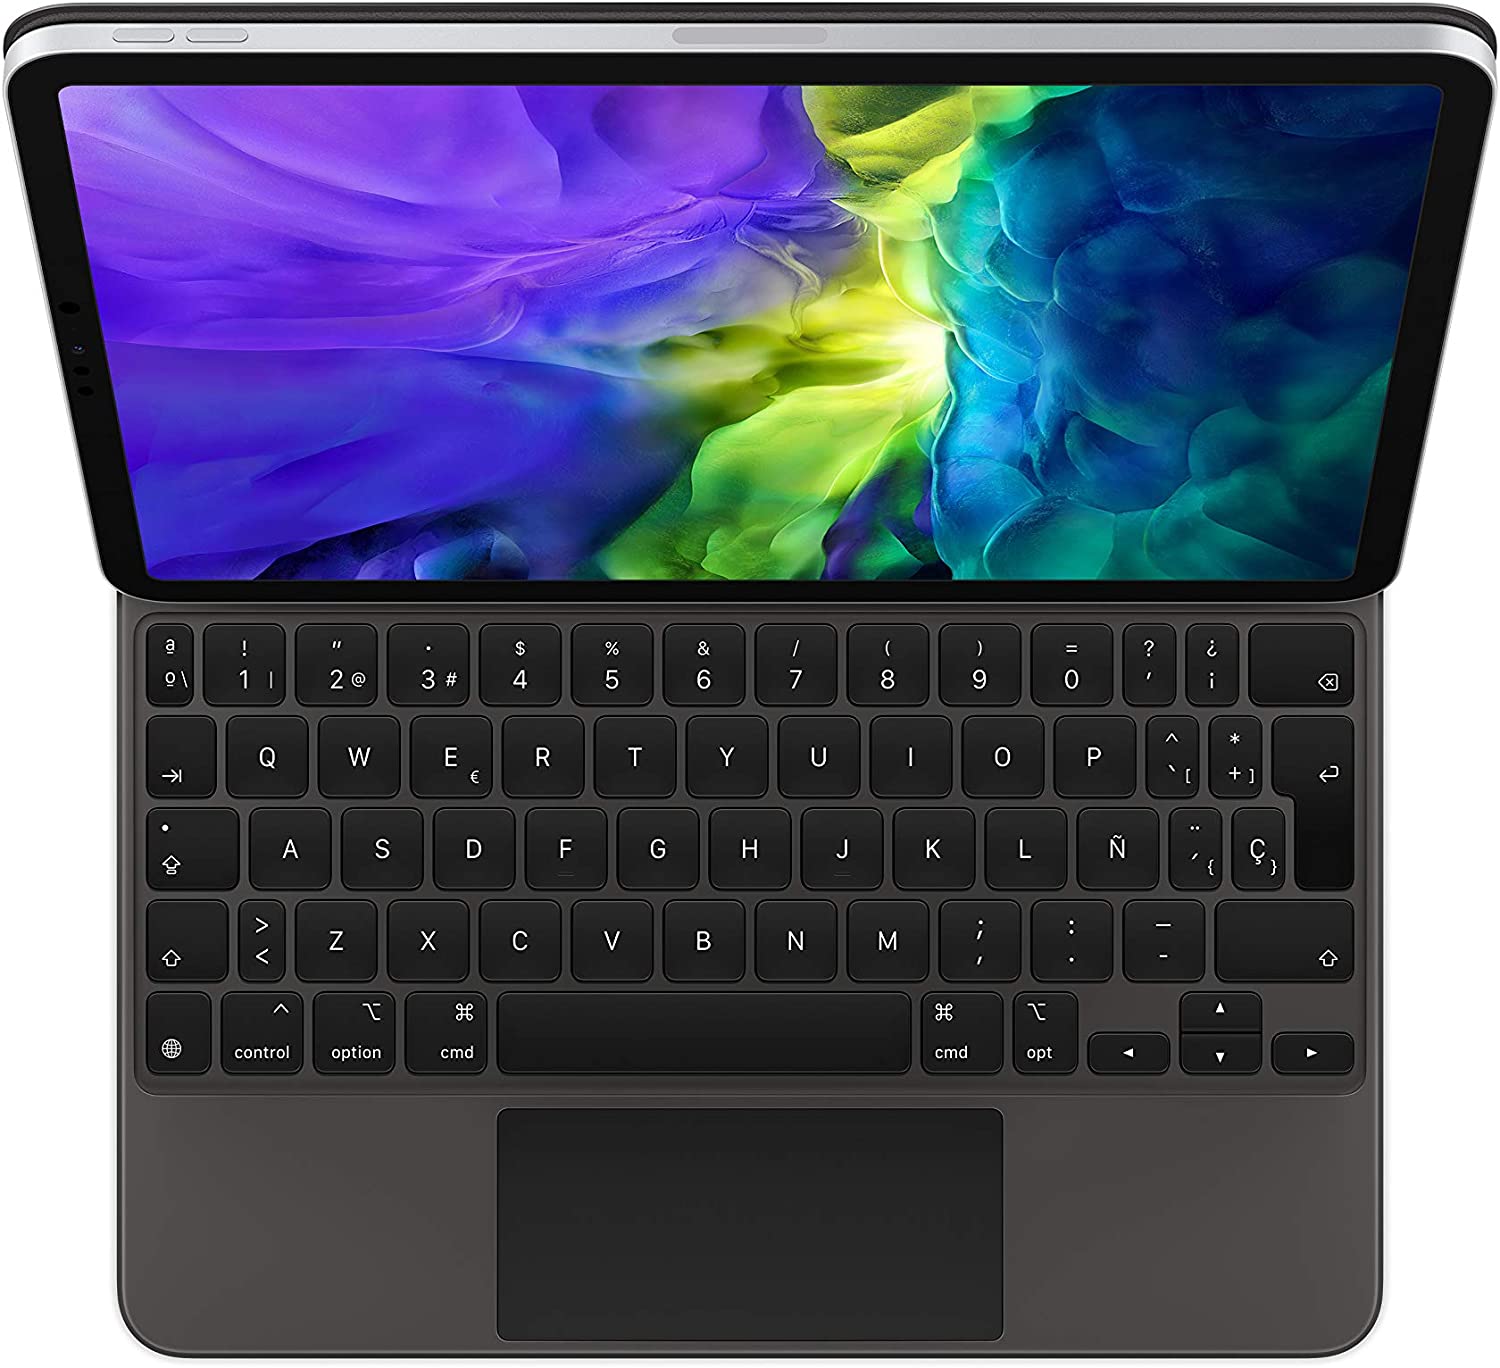 Teclado Apple Magic Keyboard Gris para iPad Pro 11 (1ª y 2ª Gen